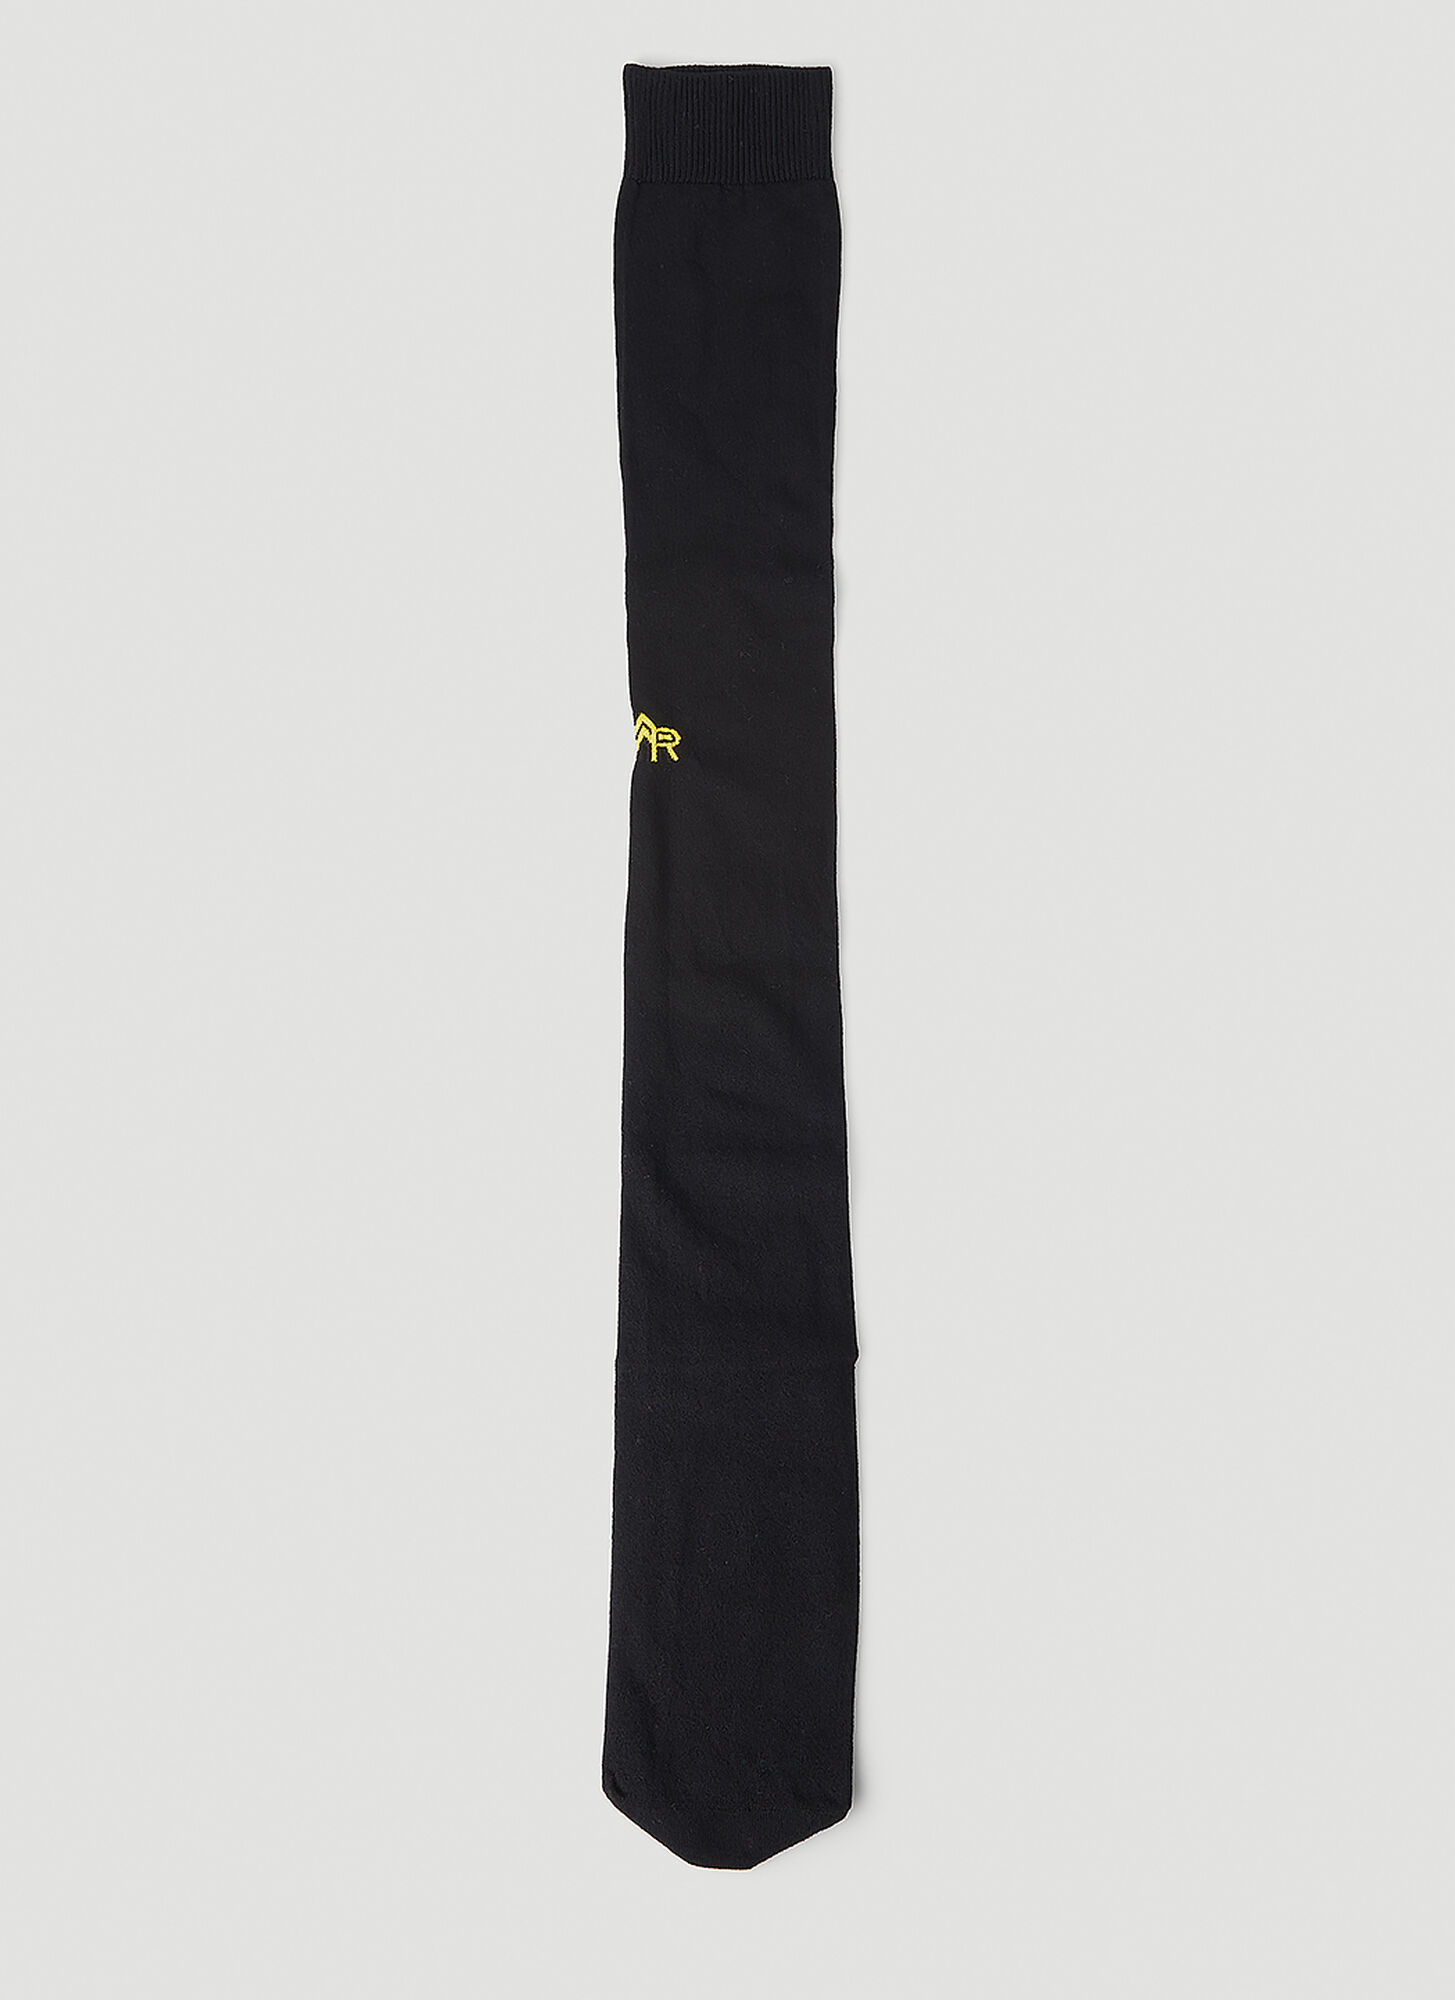 Meryll Rogge Logo Embroidered Long Socks In Black